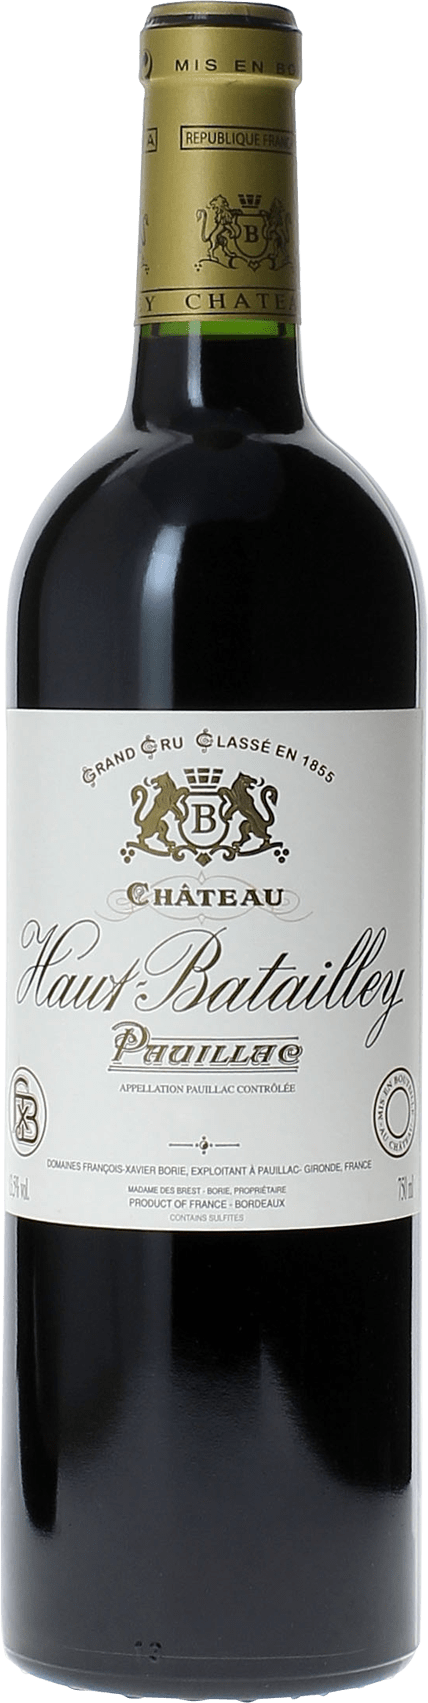 Haut batailley 1994 5 me Grand cru class Pauillac, Bordeaux rouge